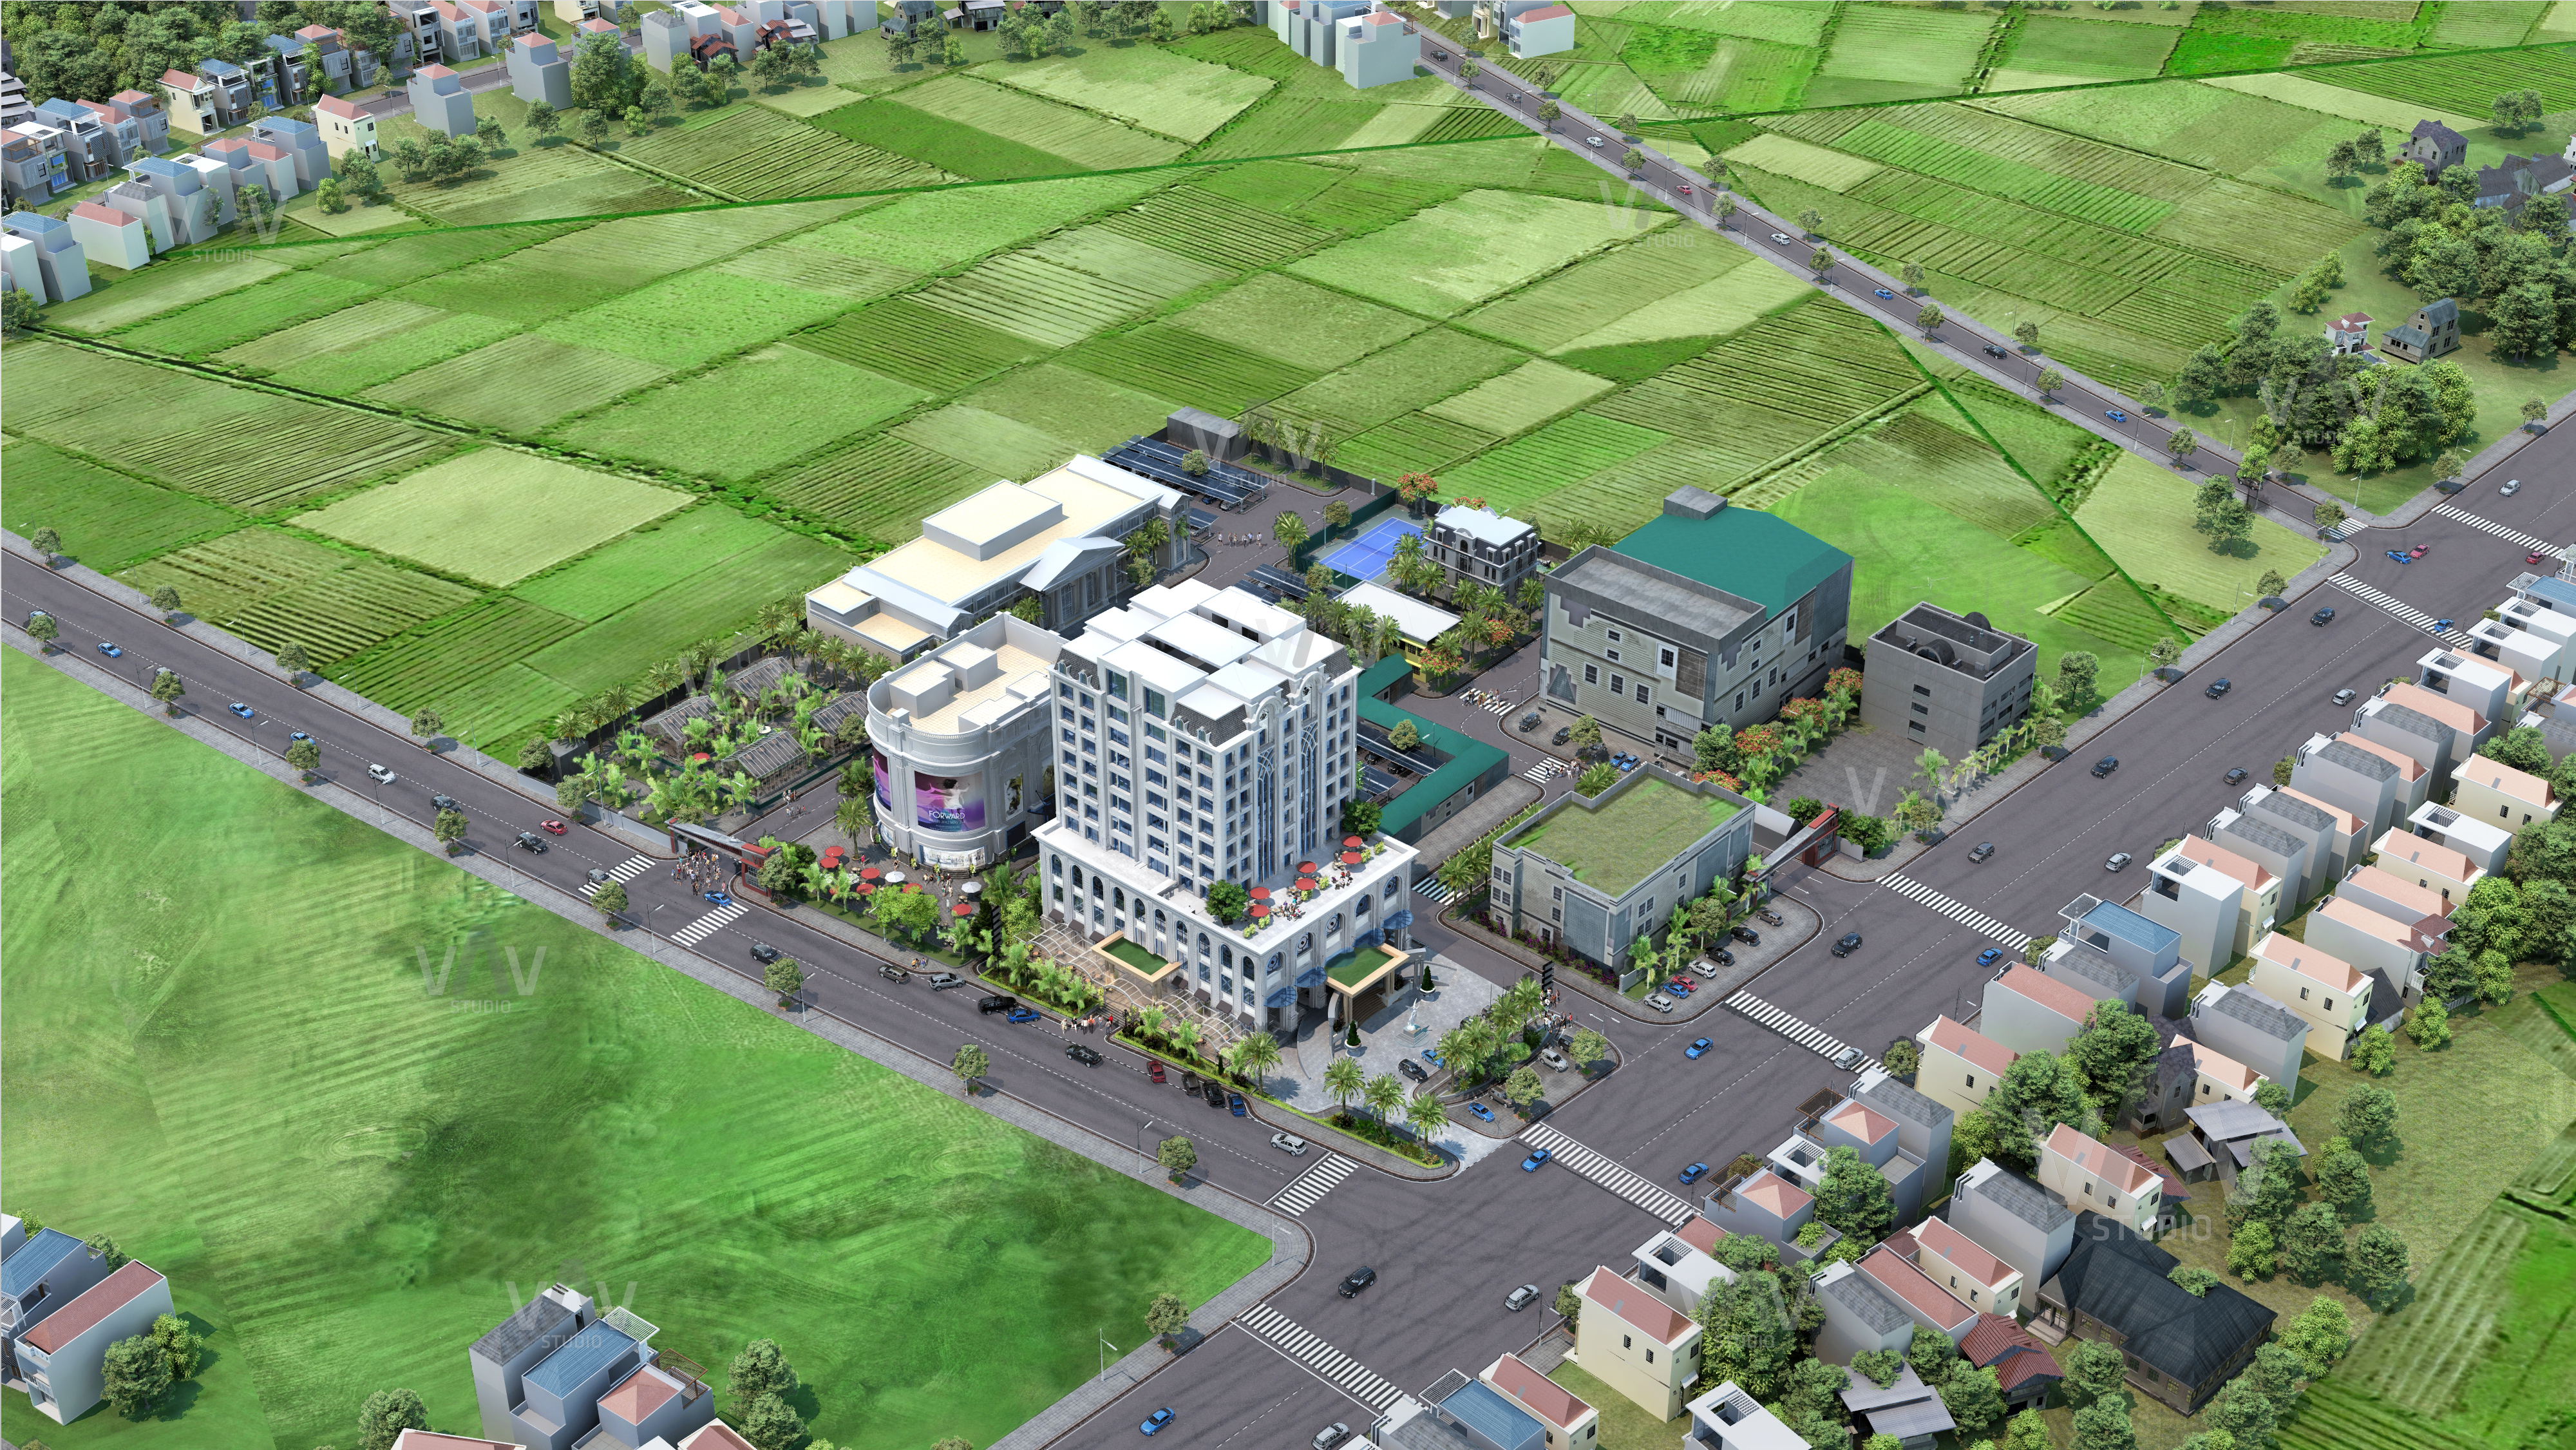 Thiết kế Khách Sạn tại Nghệ An Diễn họa 3D khách sạn Minh Phú 1607794939 3